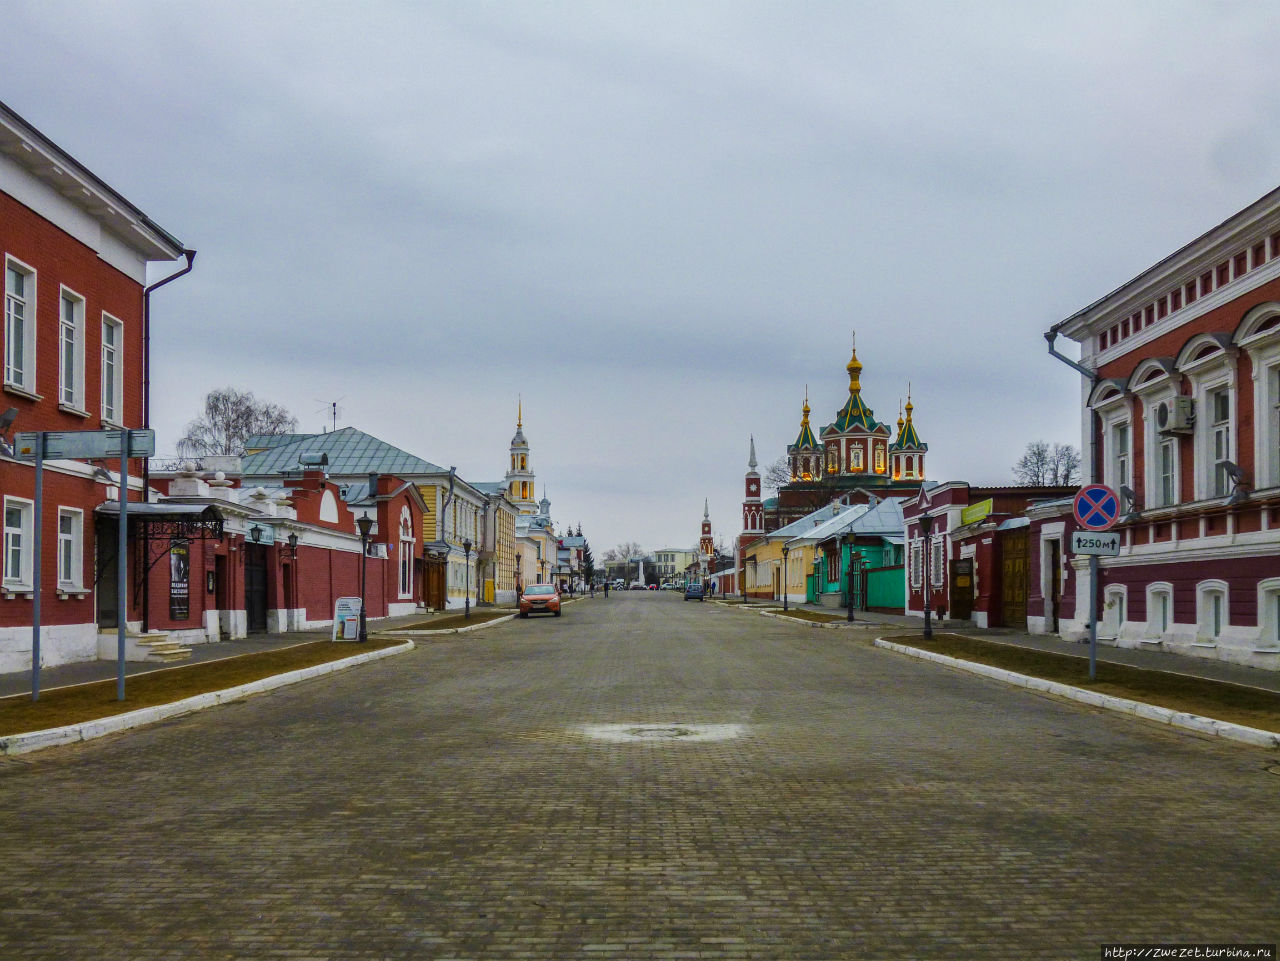 Улица старой Коломны Коломна, Россия